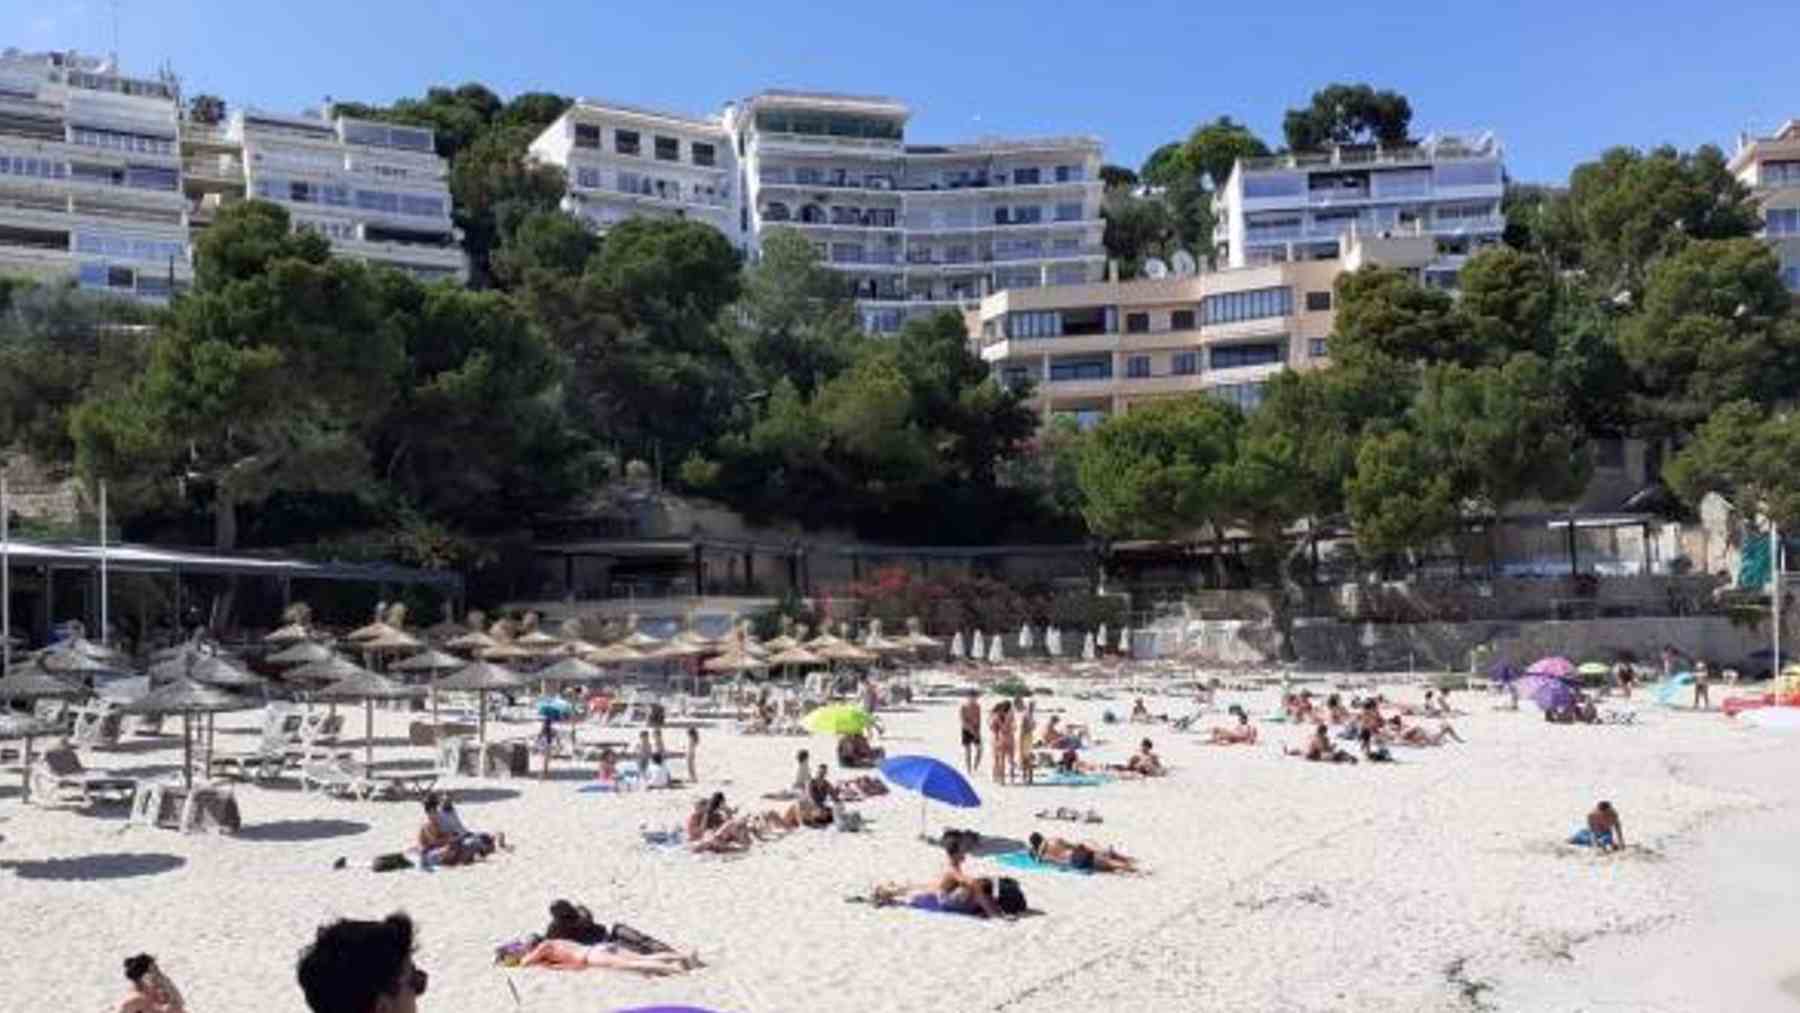 Bañistas en una playa de Mallorca.